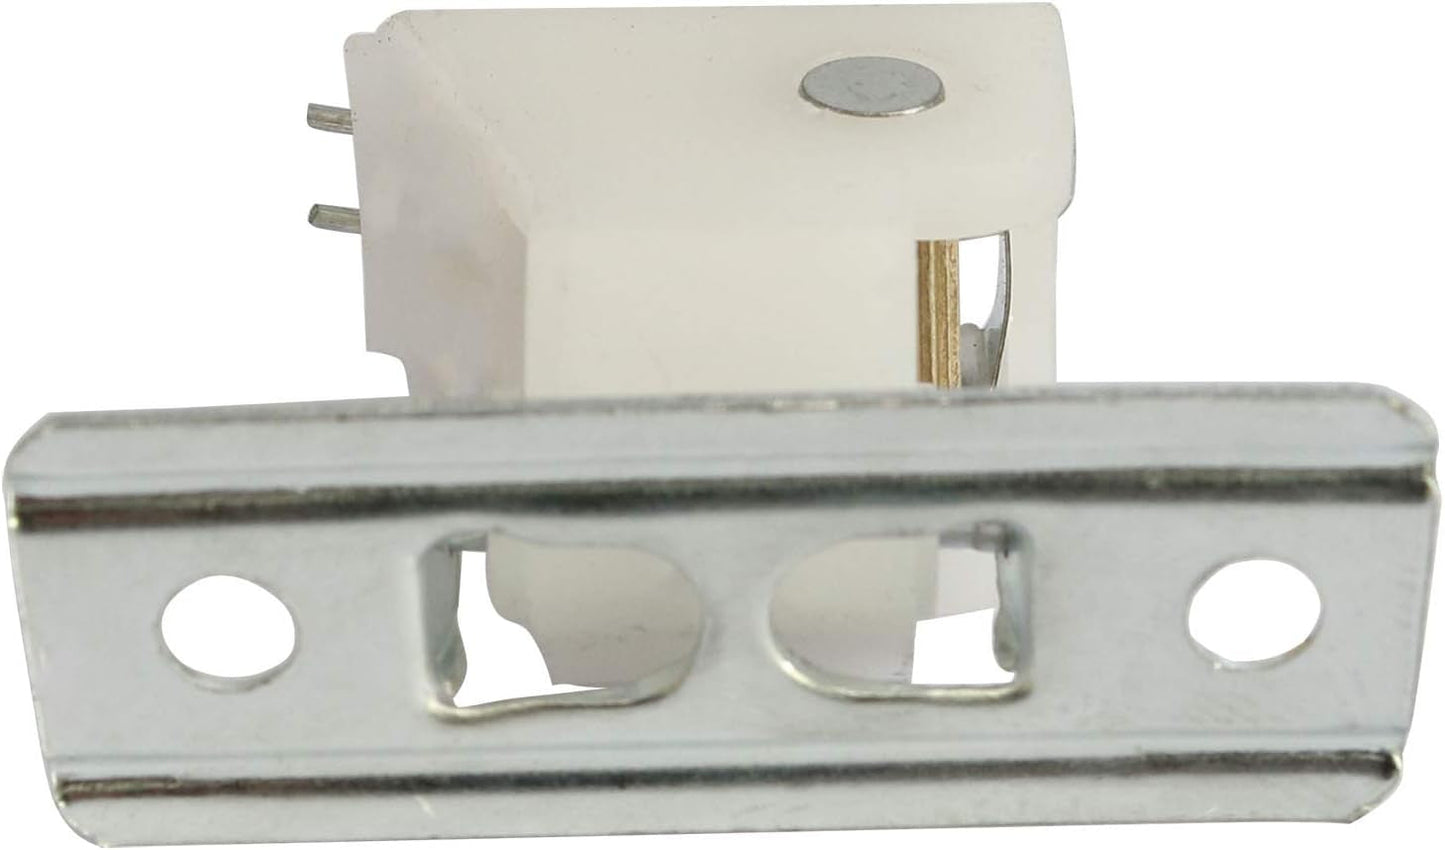 LQ Industrial Window Blind Lock 4PCS Roman Shade Cord Locks